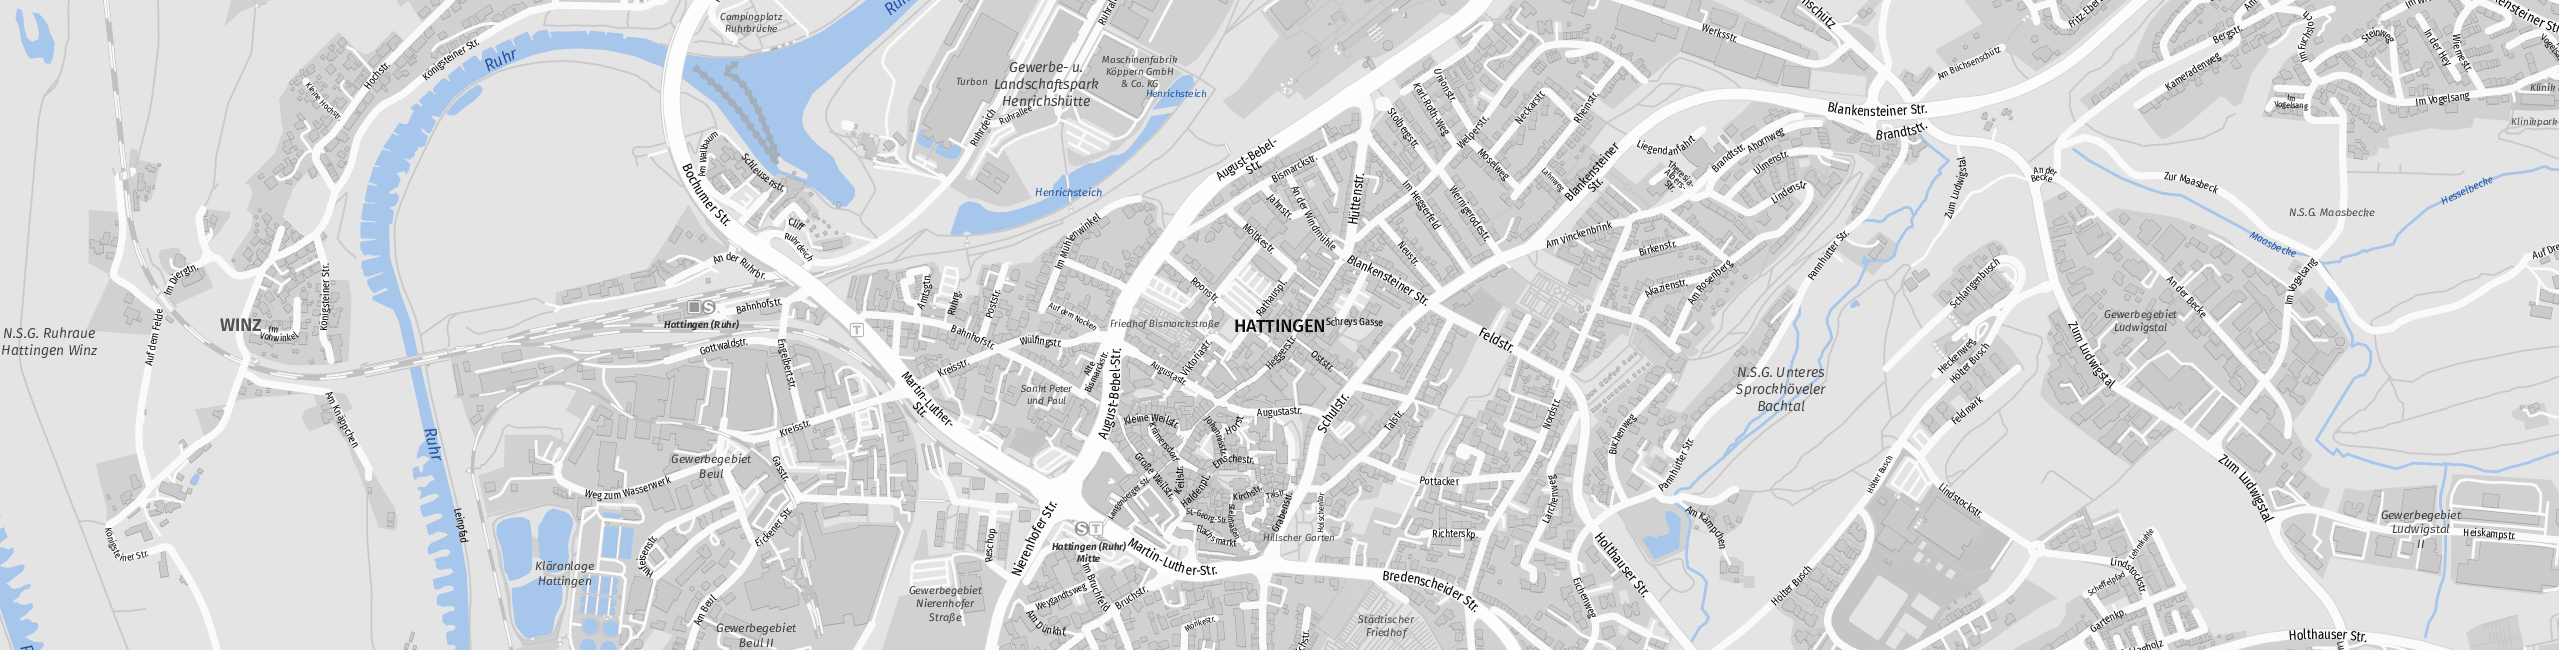 Stadtplan Hattingen zum Downloaden.